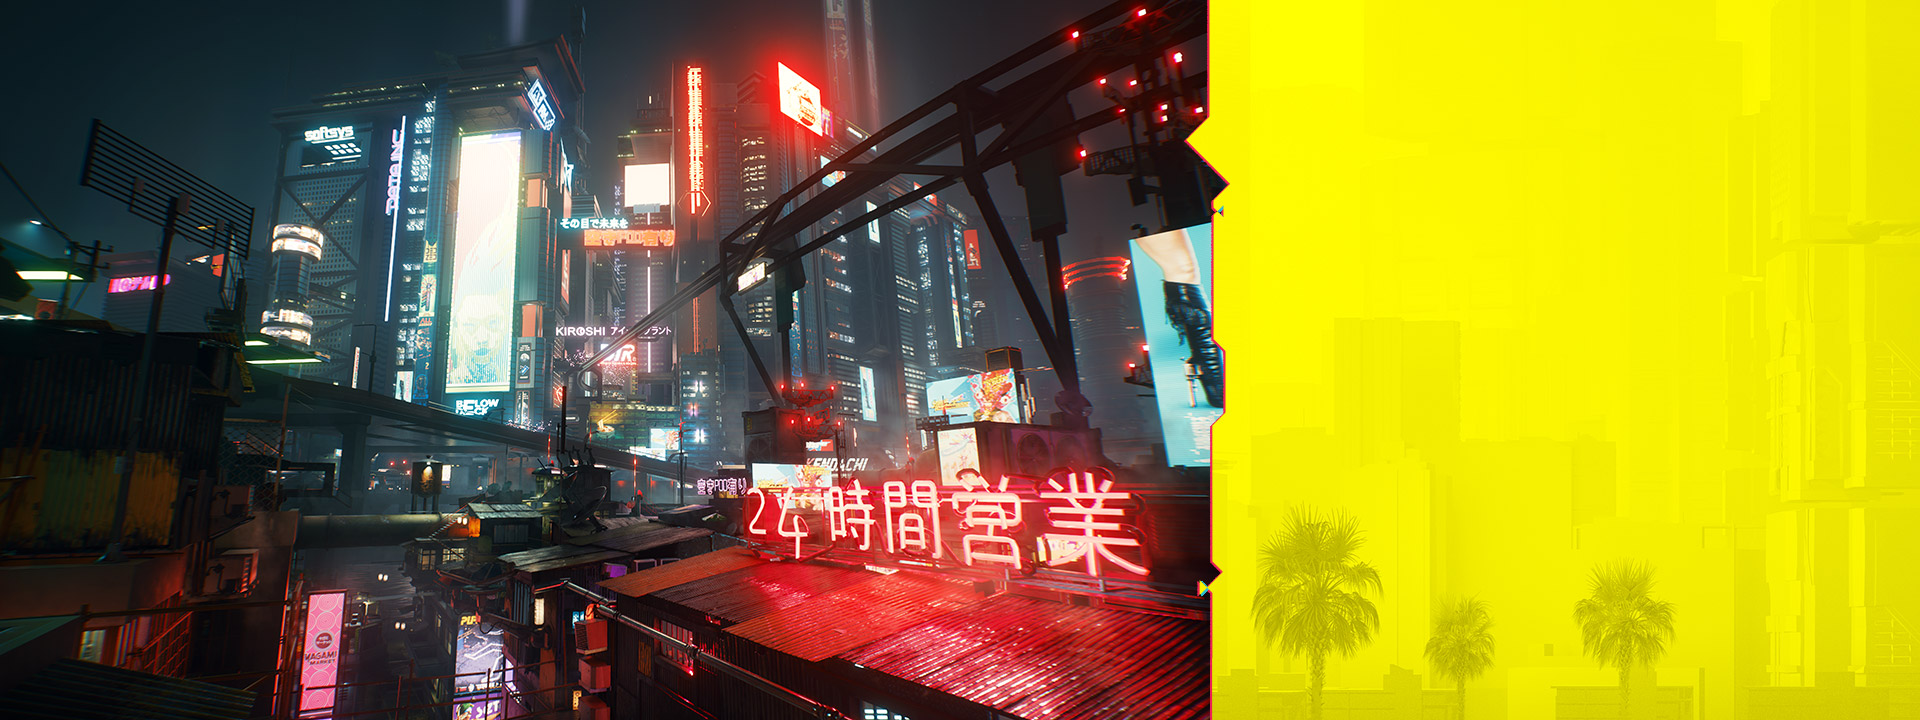 Les enseignes au néon de Night City brillent dans un paysage urbain brumeux dans la nuit.